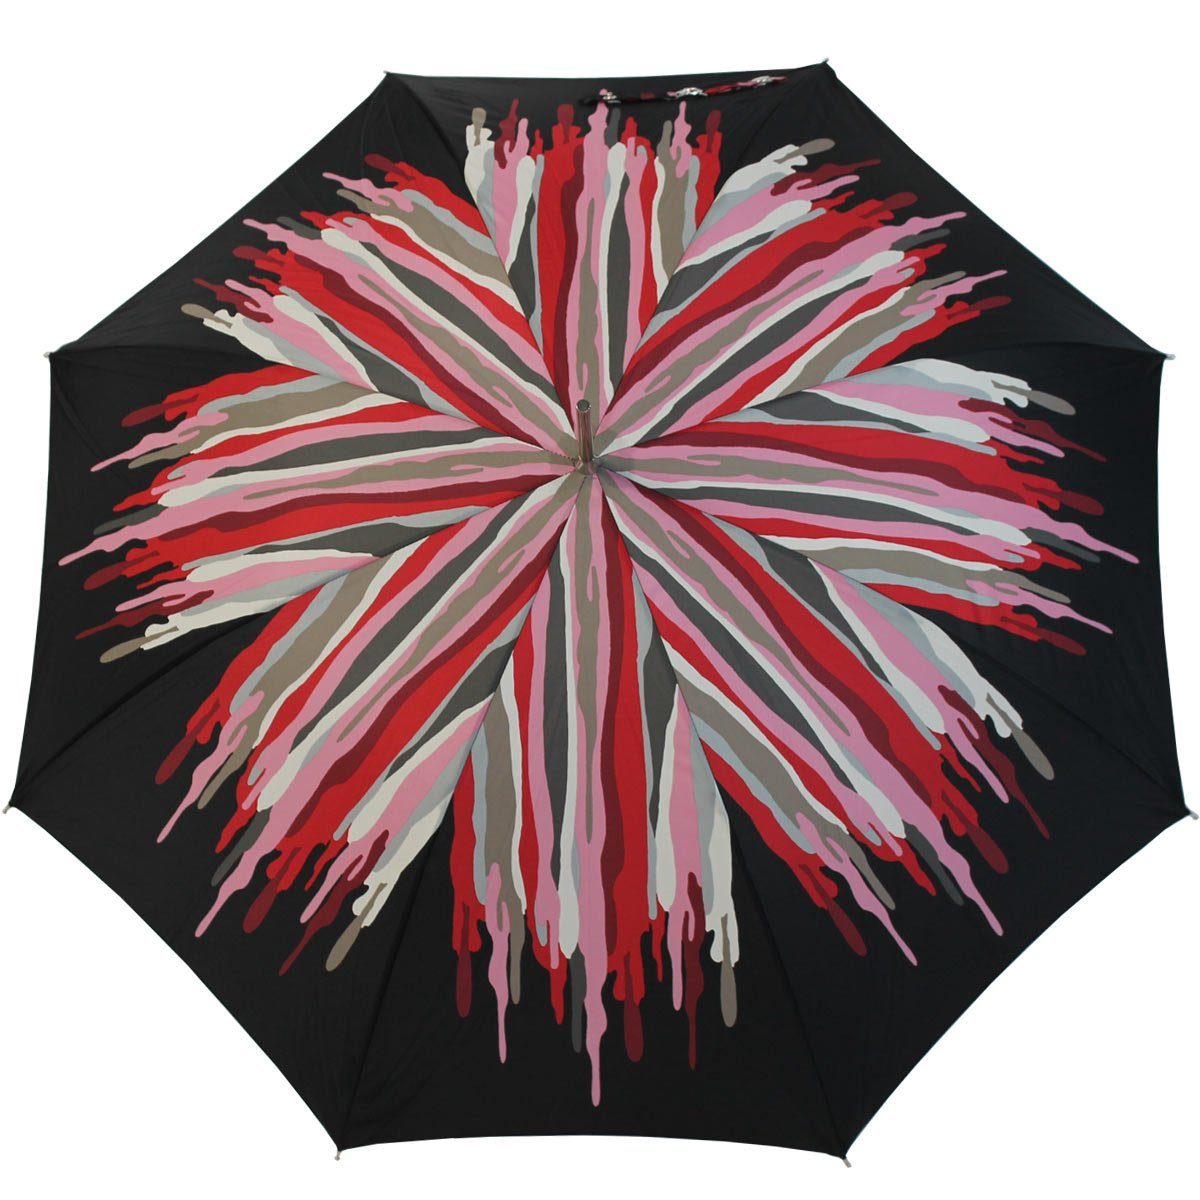 Langregenschirm Auf-Automatik, Damenschirm besondere den extravagant bedruckter der großen rot Schirm doppler® für Auftritt